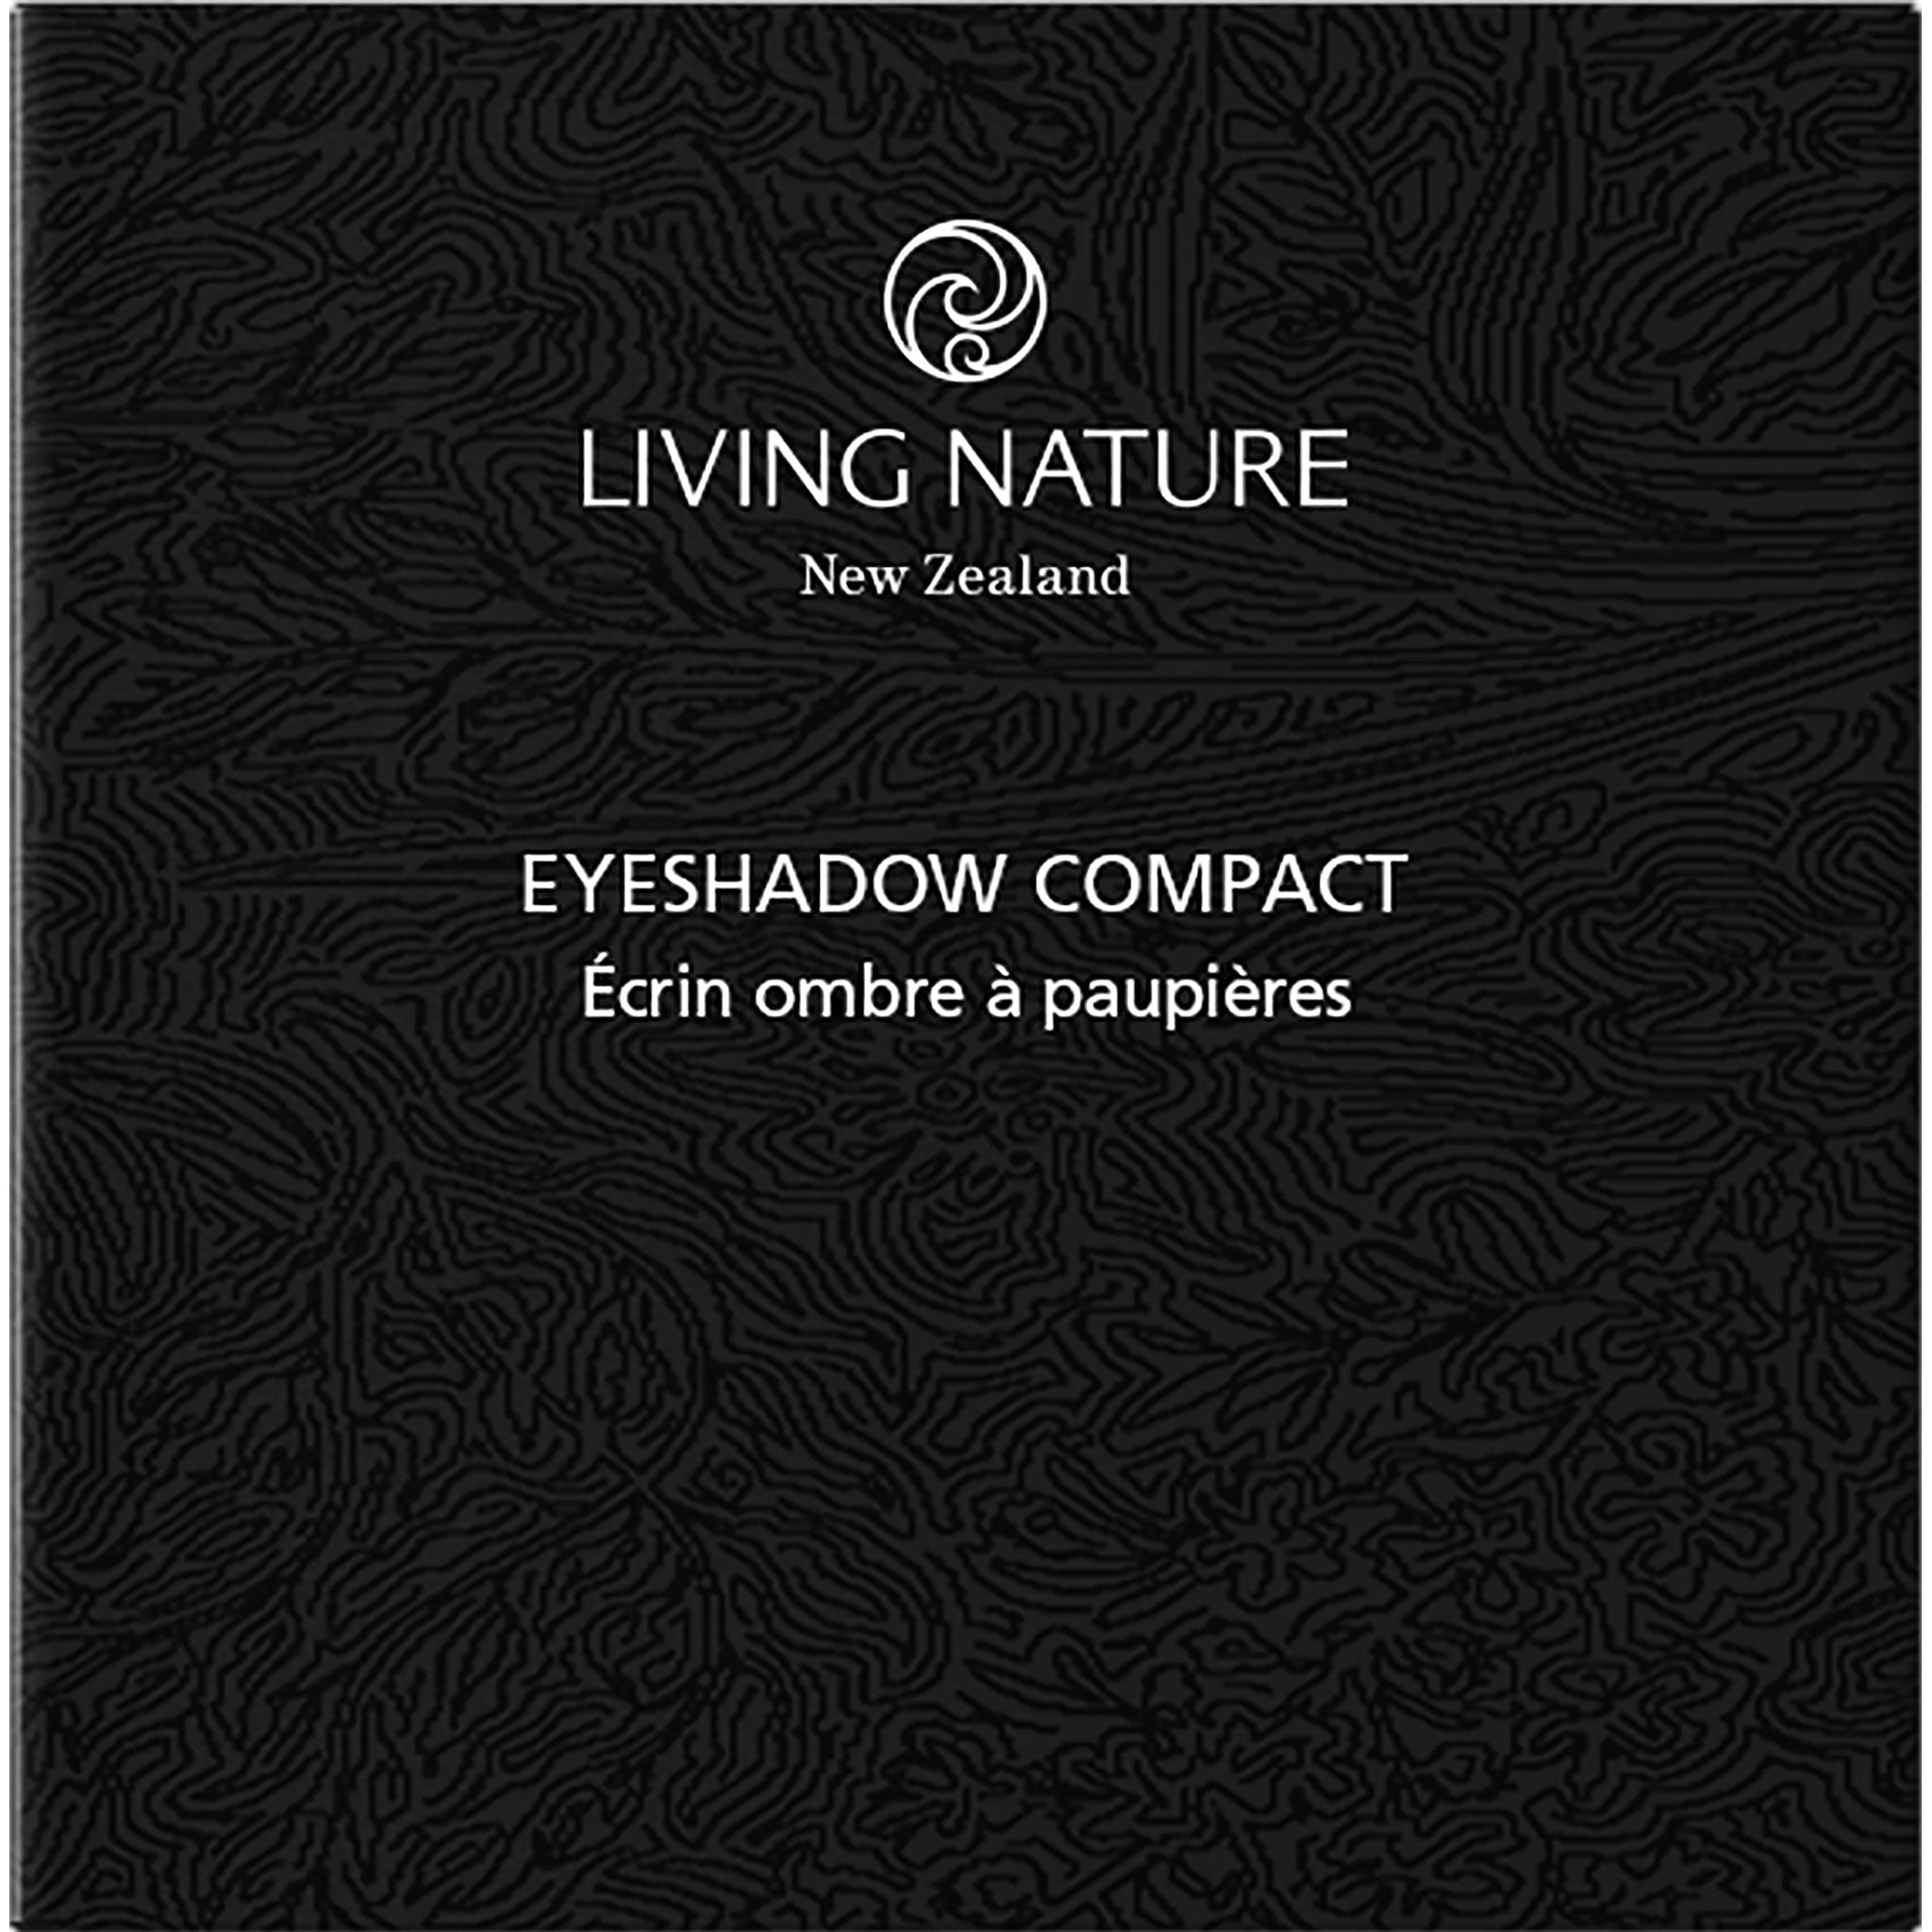 Eyeshadow Compact Case - mypure.co.uk